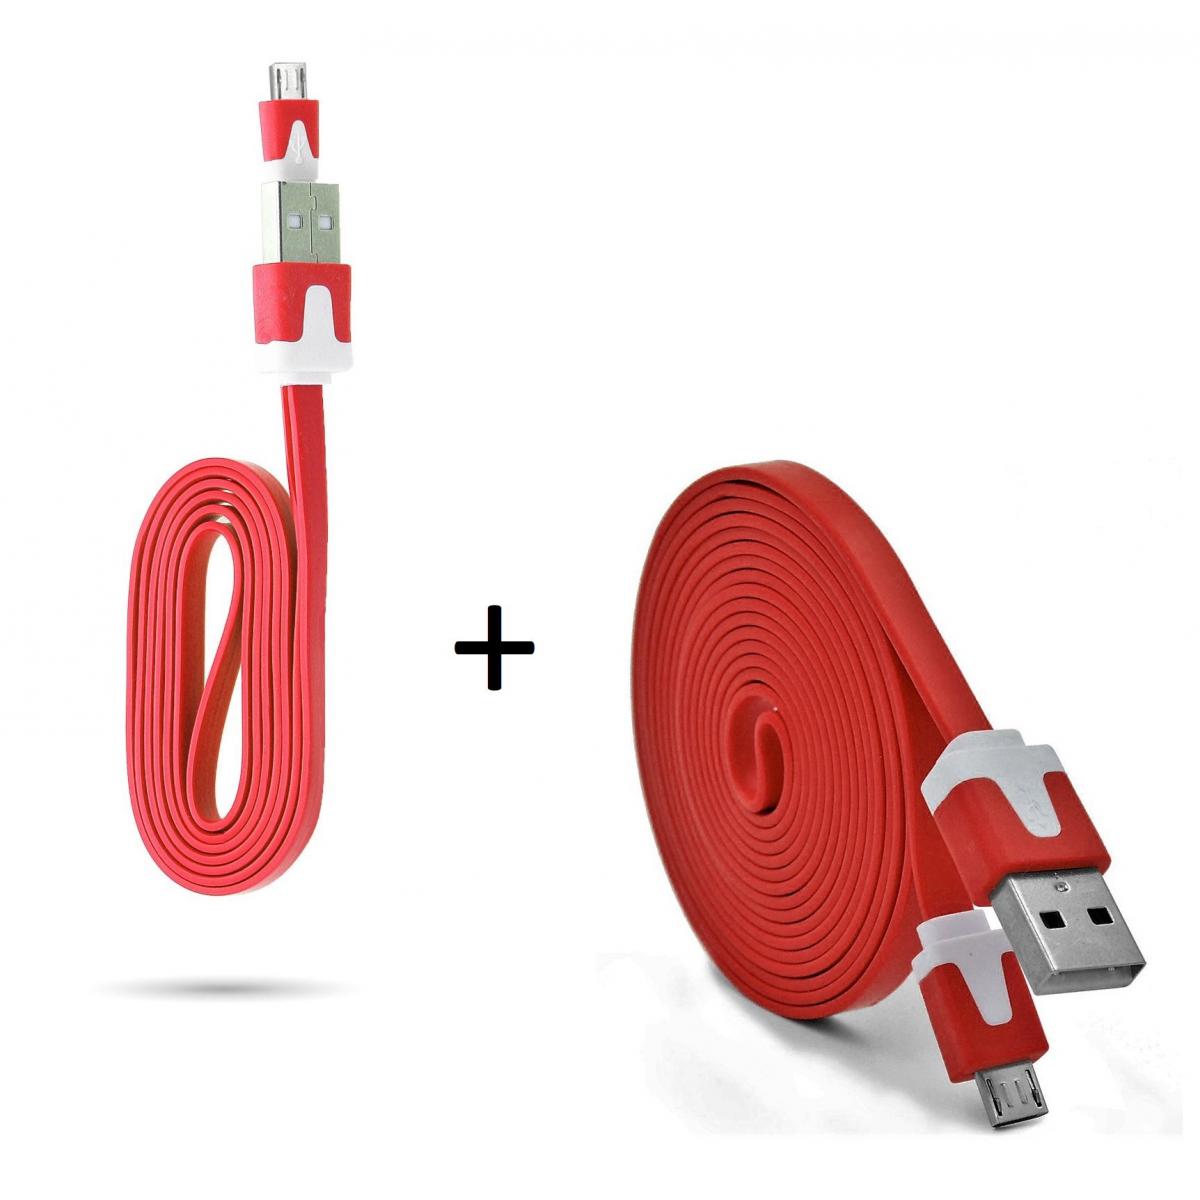 Shot - Pack Chargeur pour WIKO View 4 Lite Smartphone Micro USB (Cable Noodle 3m + Cable Noodle 1m) Android (ROUGE) - Chargeur secteur téléphone